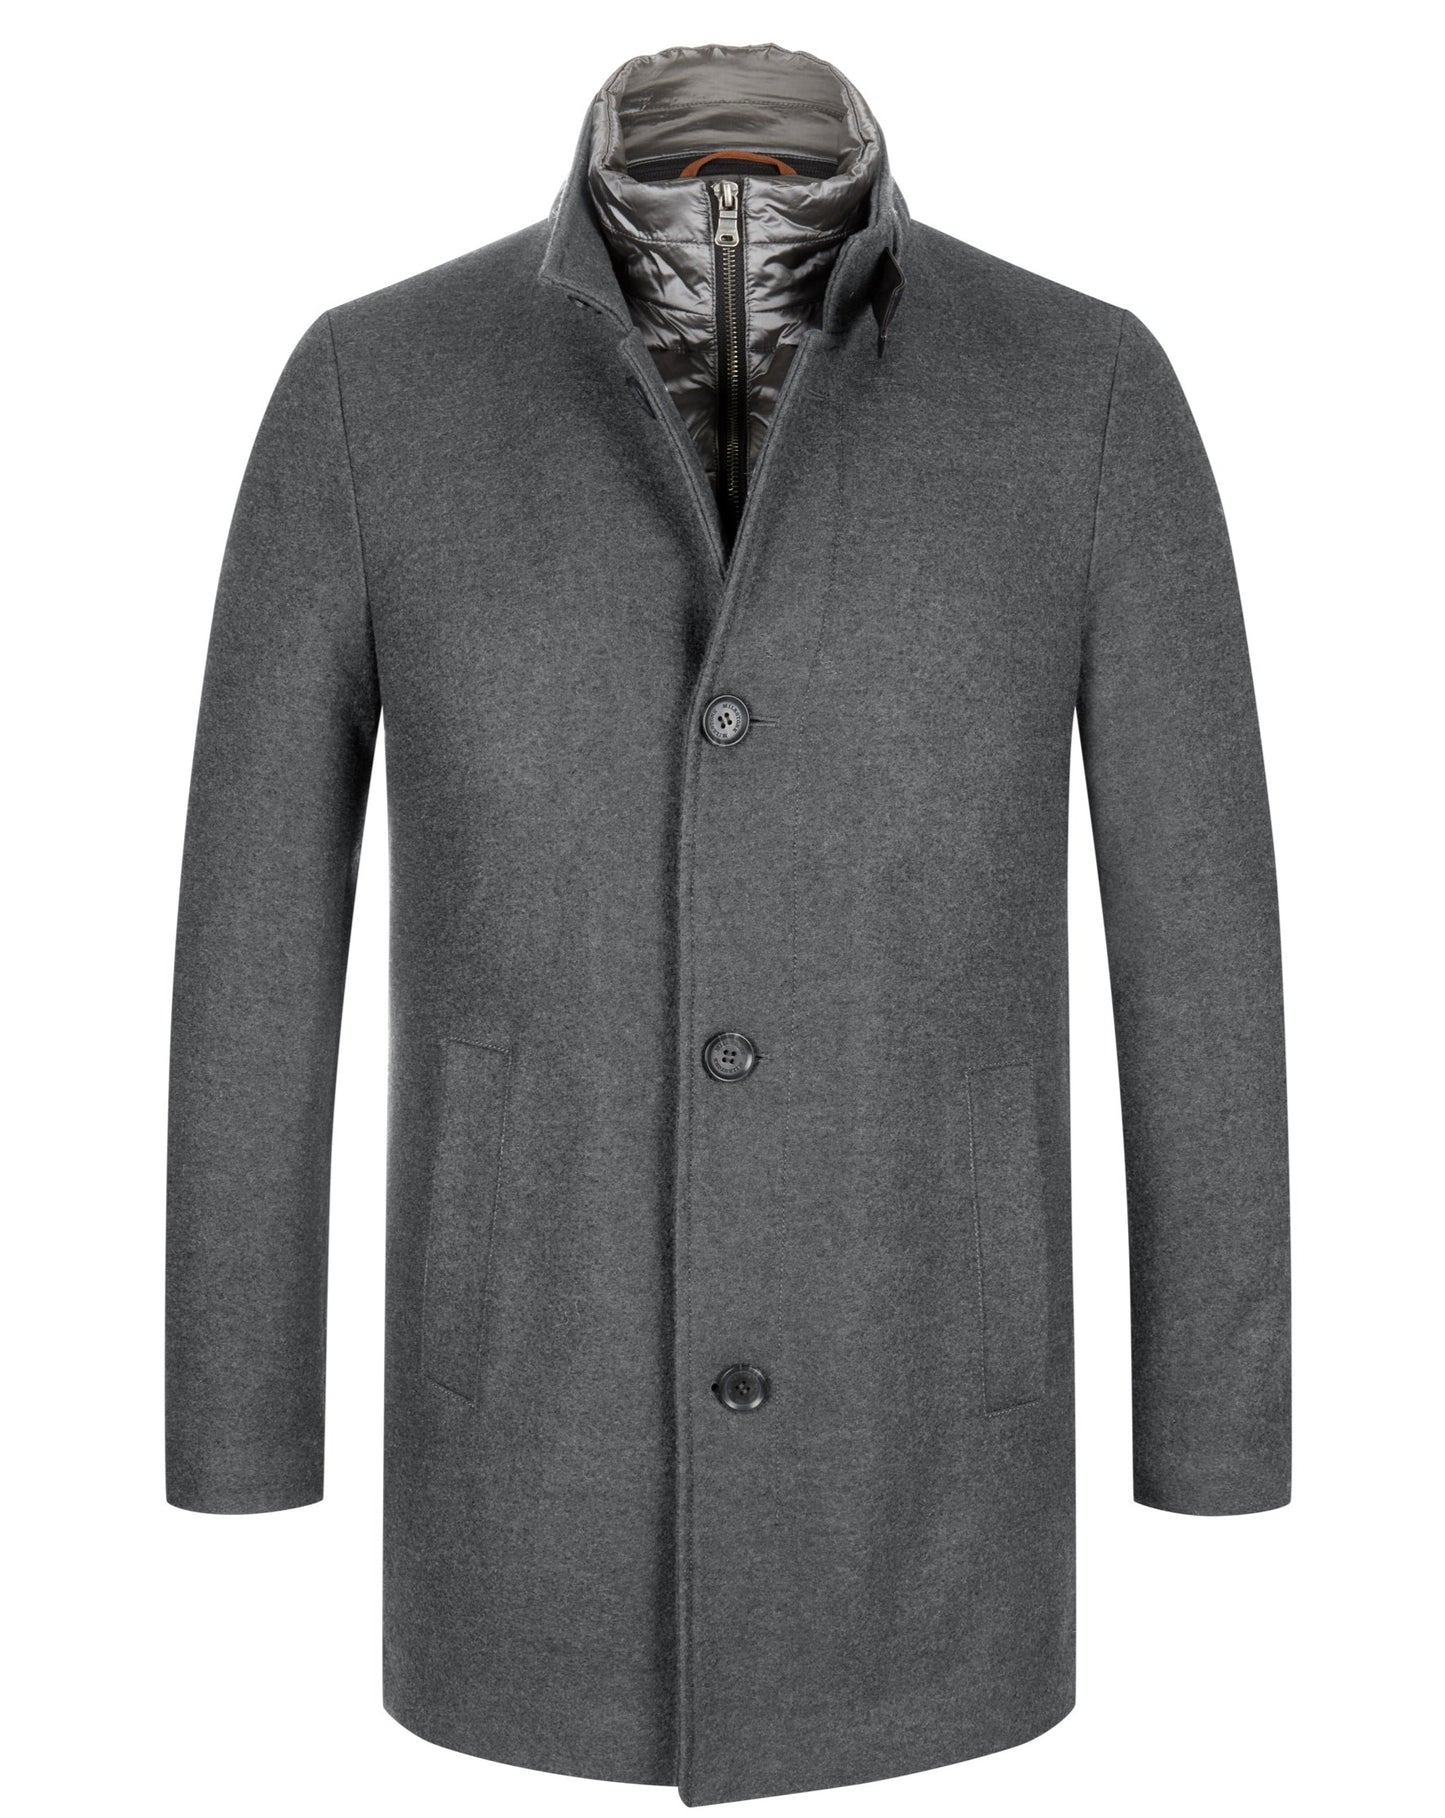 MILESTONE Jacket Wool Blended, Grey